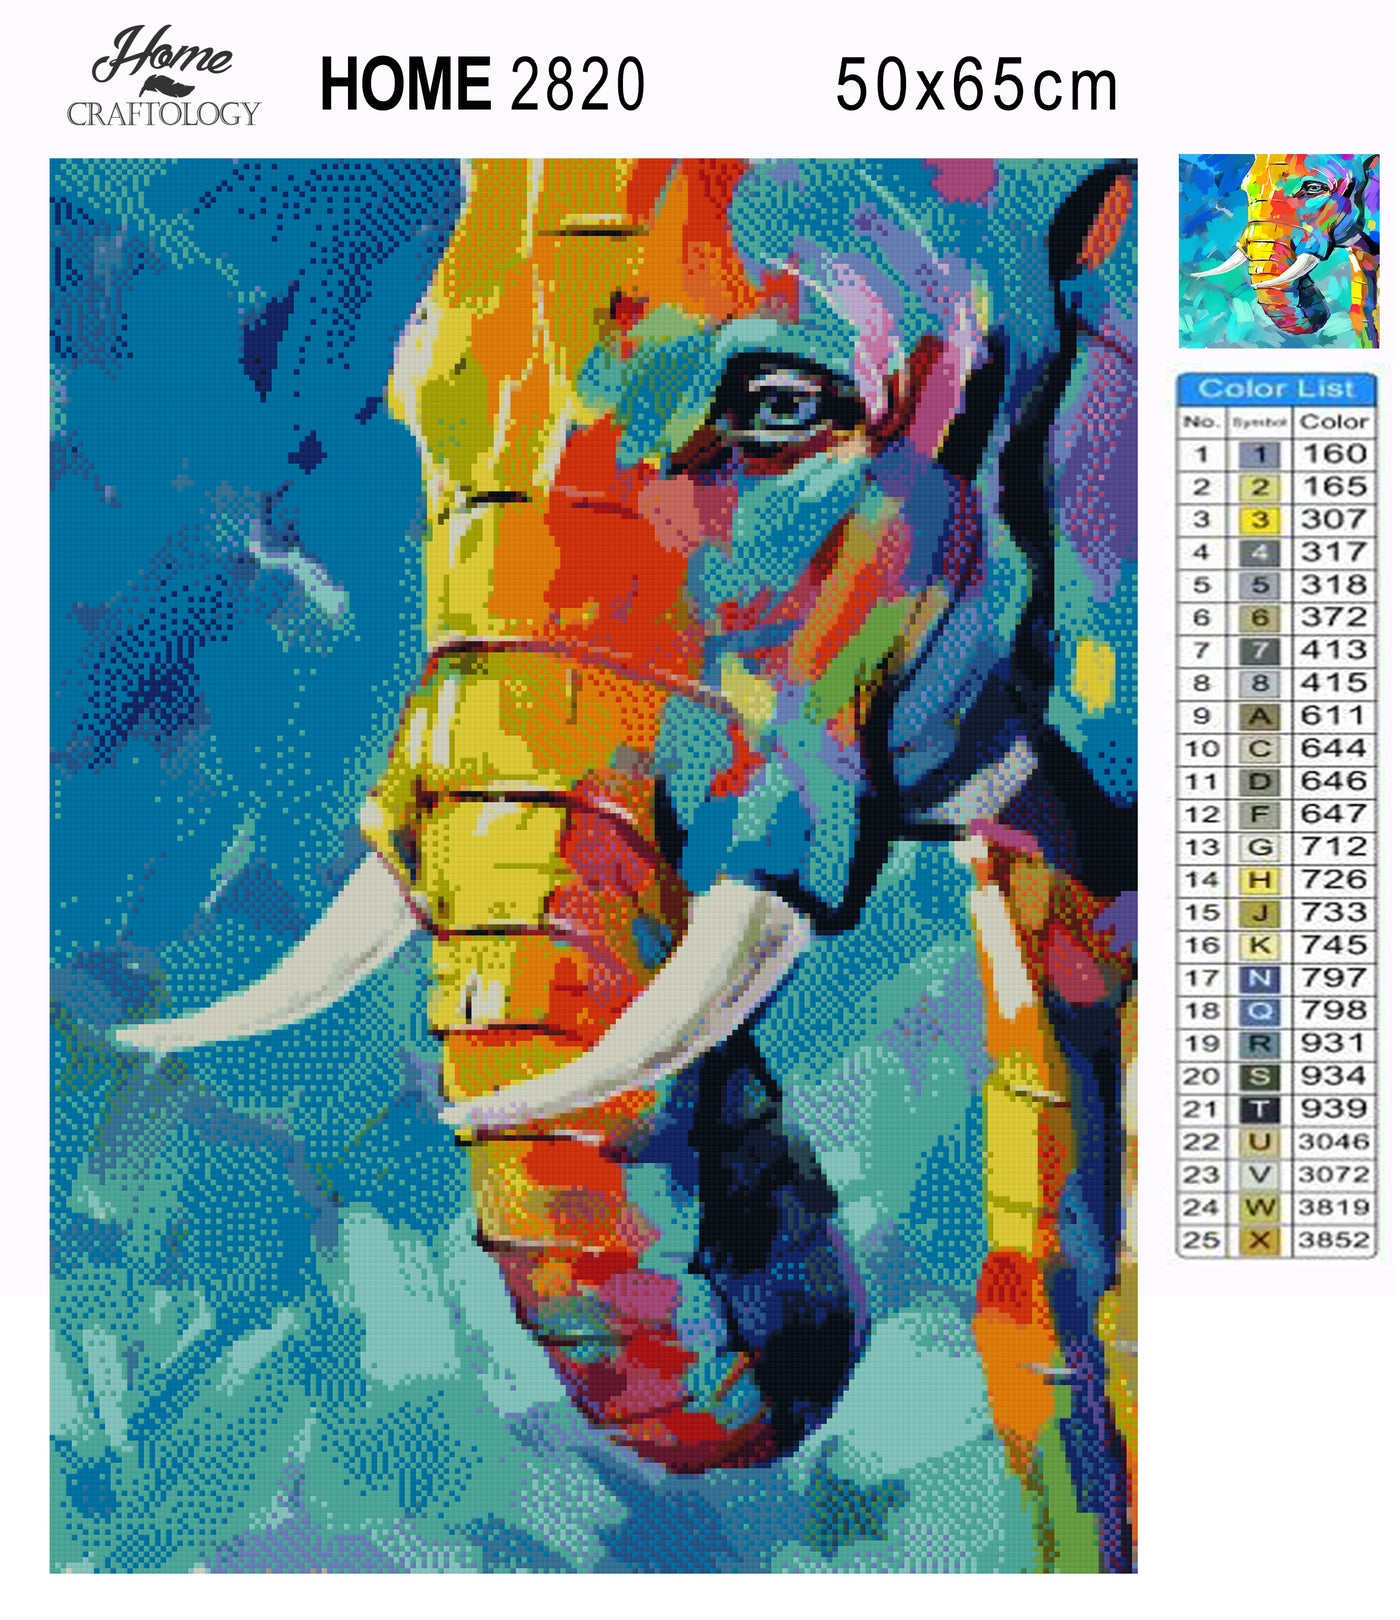 Elephant Painting - Premium Diamond Painting Kit